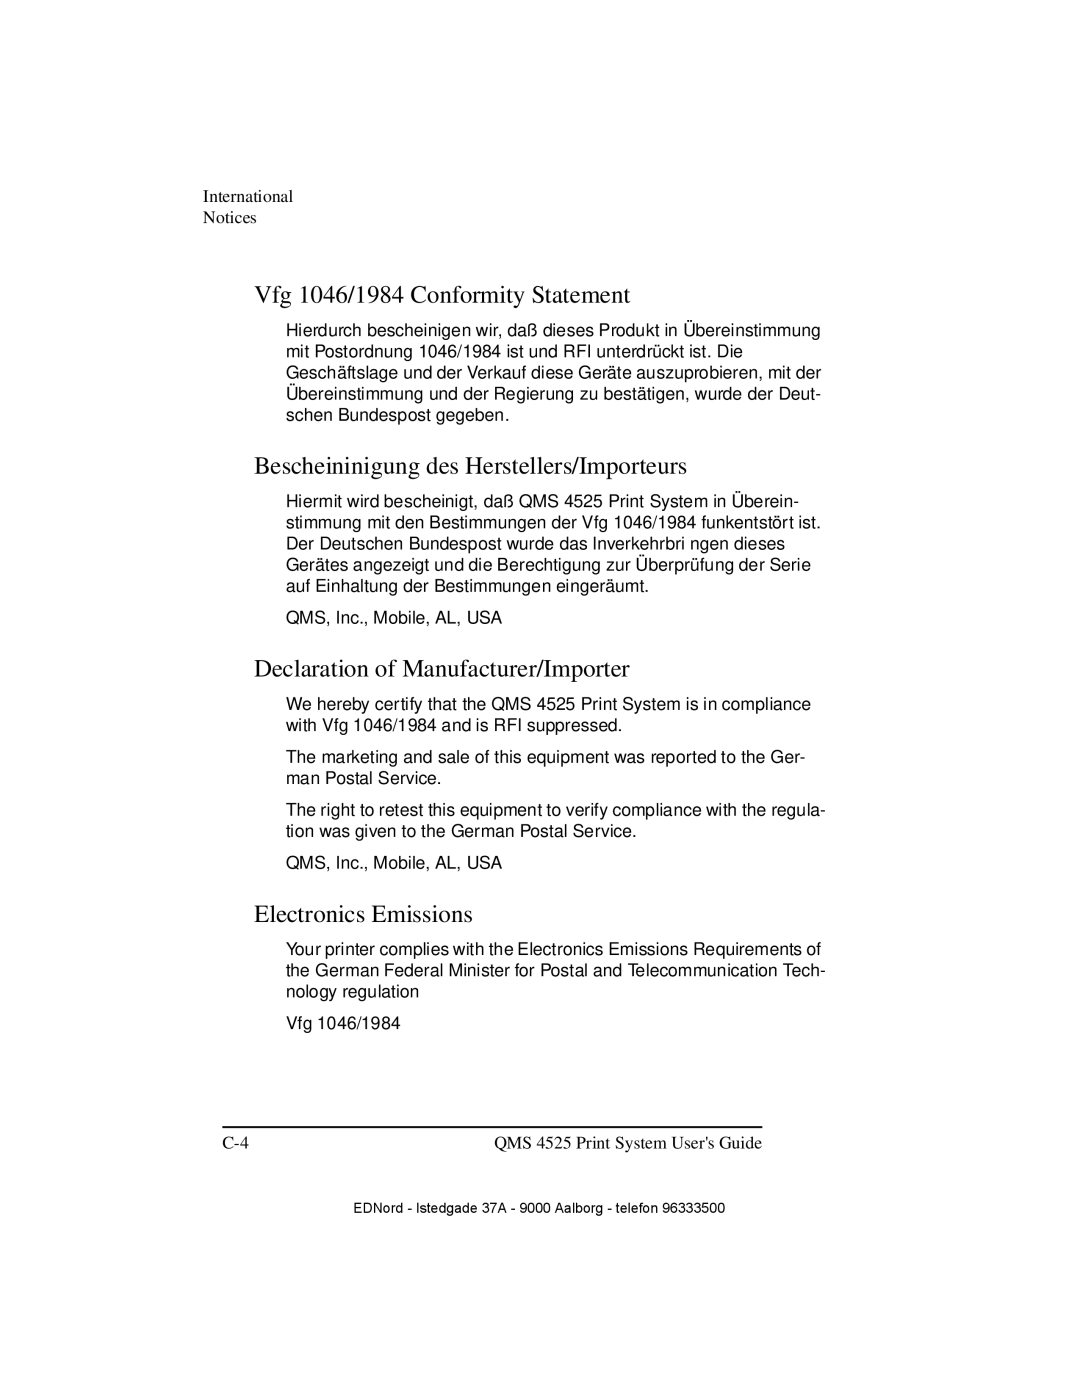 IBM QMS 4525 manual Vfg 1046/1984 Conformity Statement, Bescheininigung des Herstellers/Importeurs, Electronics Emissions 